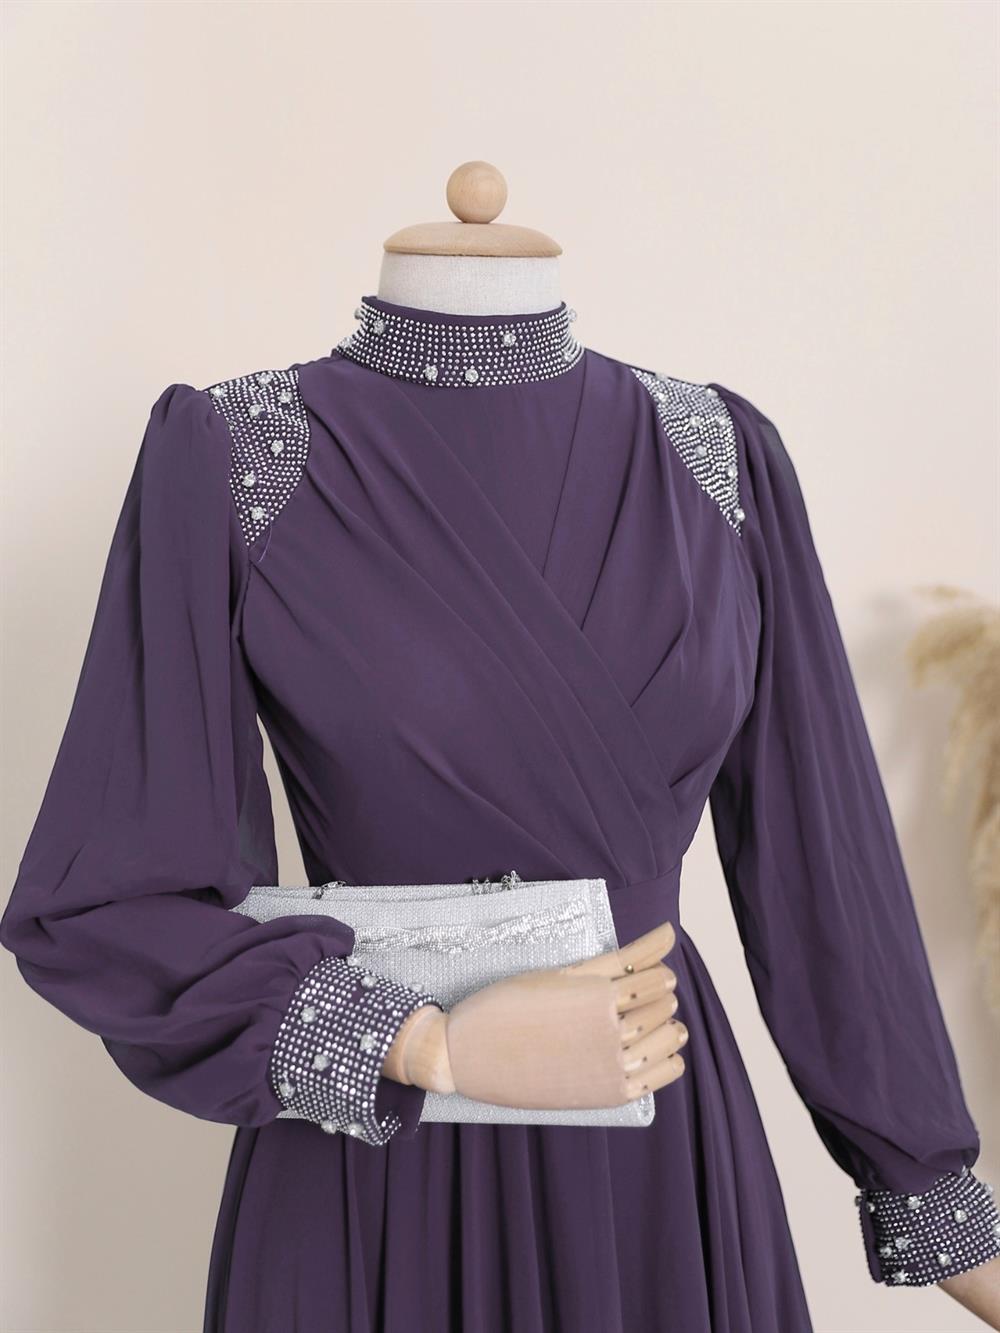 turkish website for dresses